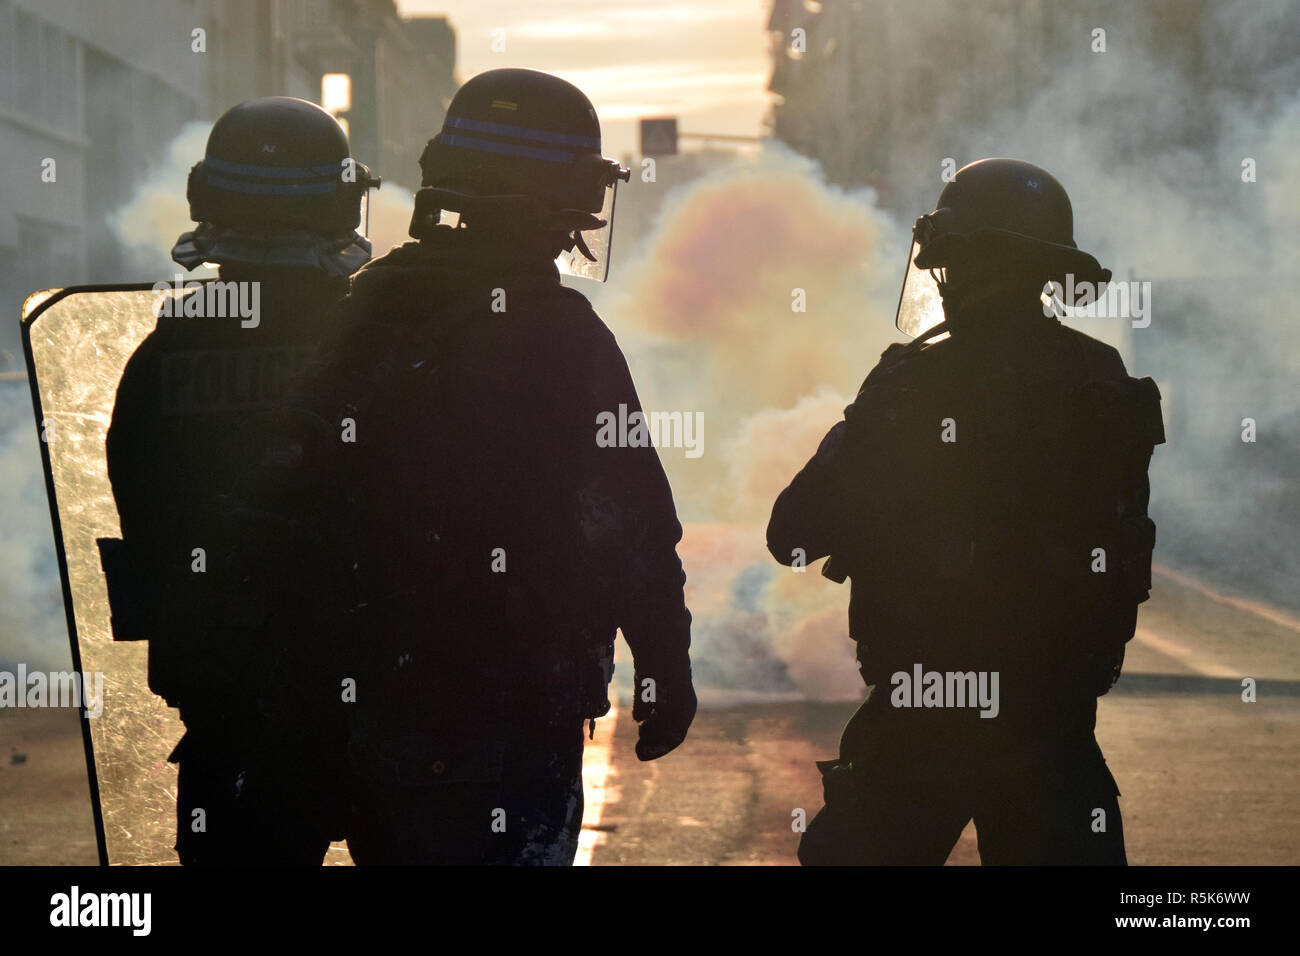 Le violenze avvenute in dicembre il primo per le strade di Tolosa, Francia, tra la polizia e la maglia gialla (gilets jaunes). La polizia è largamente usato gas lacrimogeni. Foto Stock